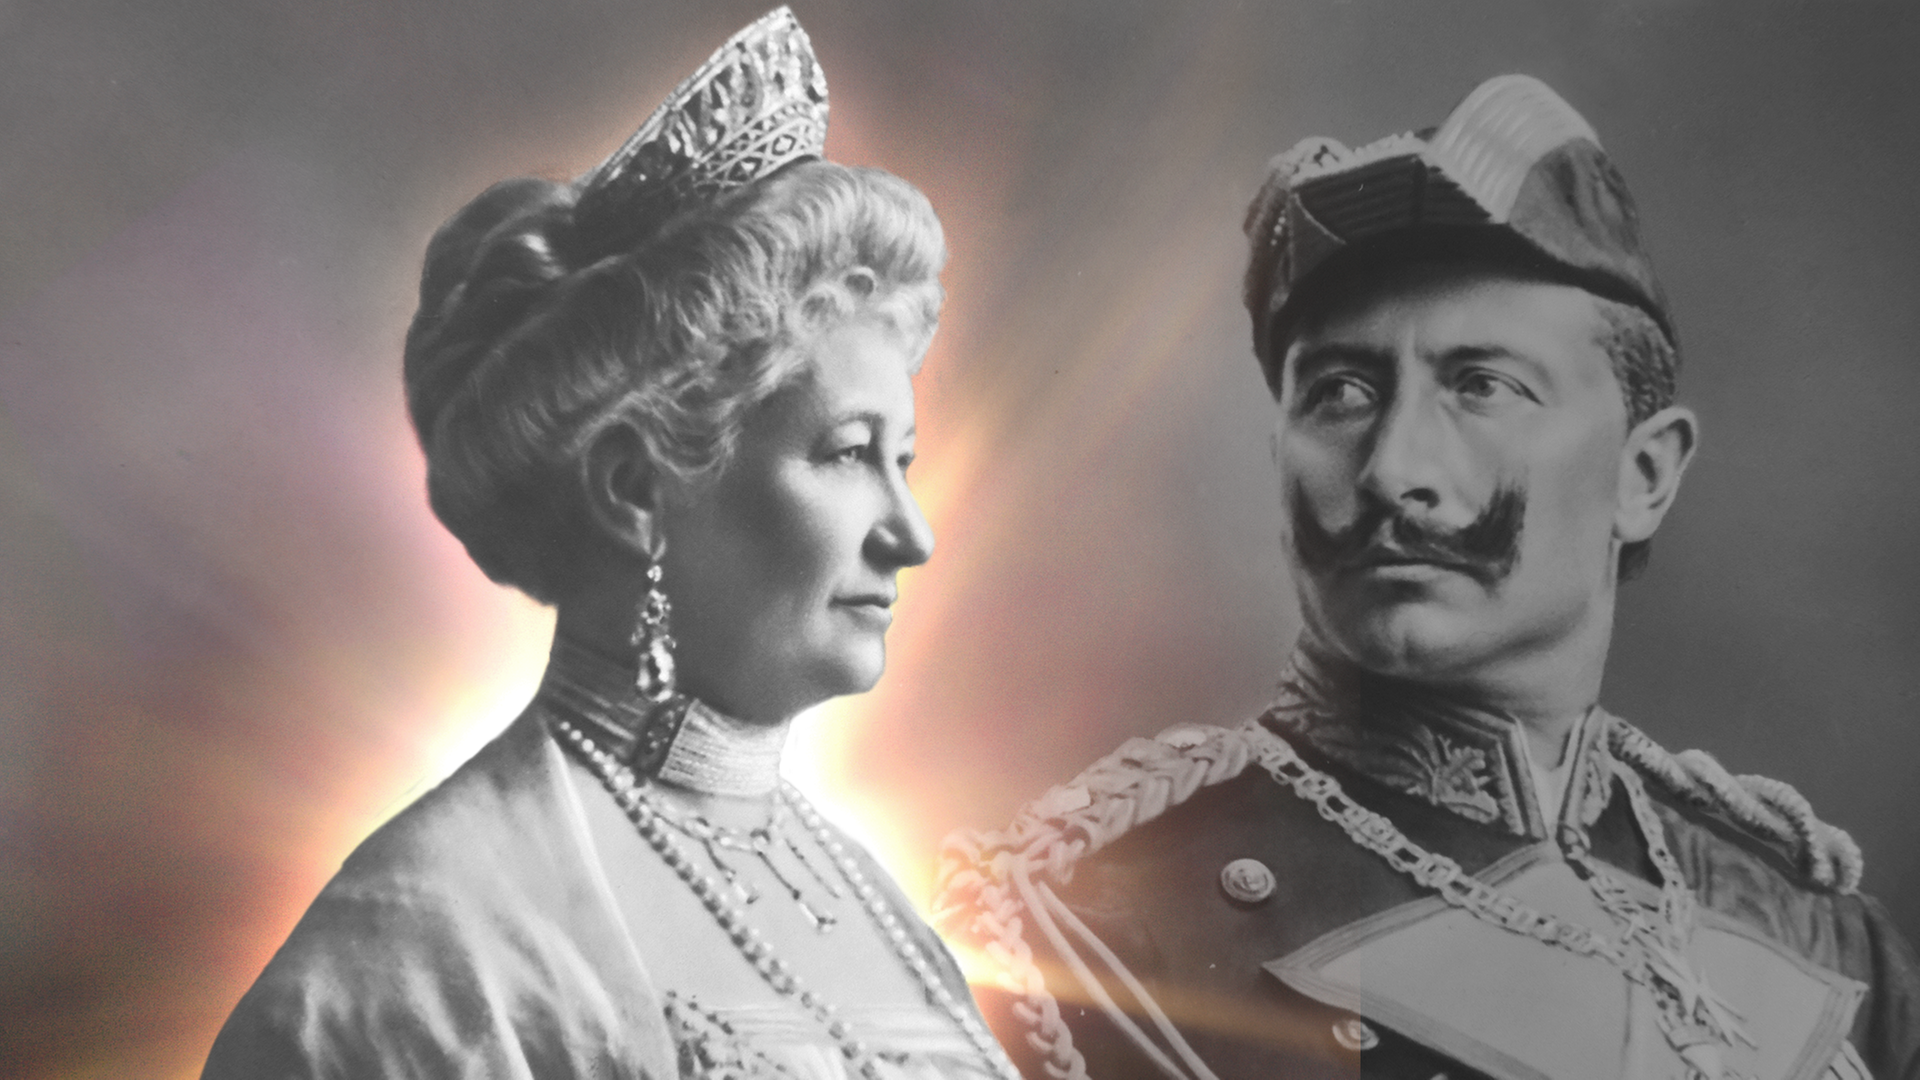 Schwarz-Weiß-Fotografie des deutschen Kaiserpaares: Auguste Victoria mit Diadem im Haar, ihr Mann Kaiser Wilhelm II. mit Schnauzbart und in Uniform.